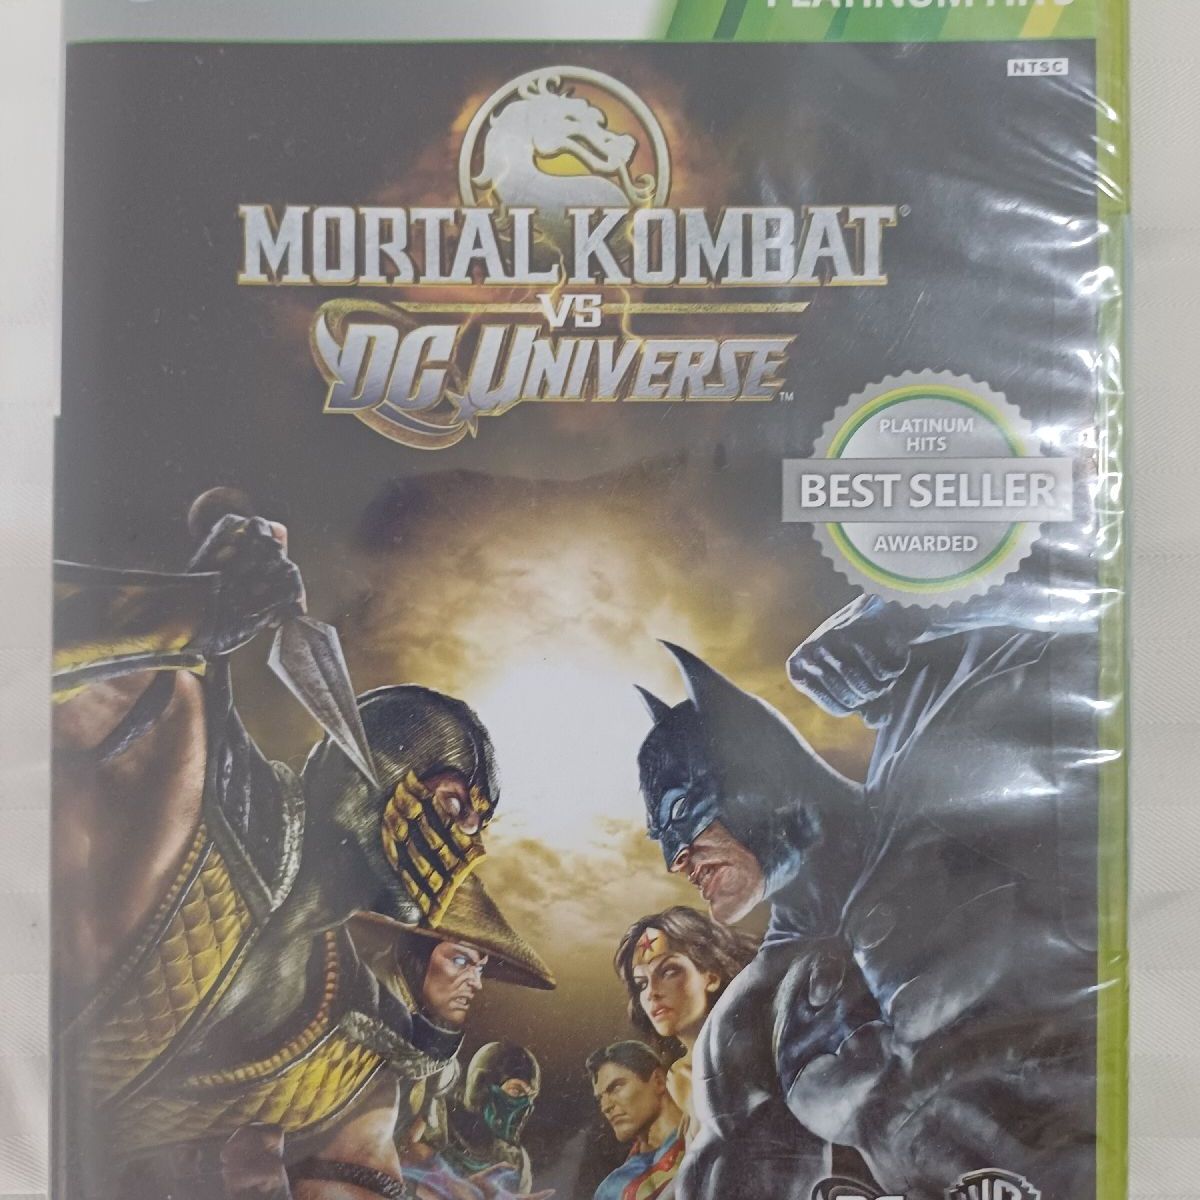 Jogo 360 Mortal Kombat Vs Dc Universe Original, Jogo de Videogame Usado  90972571